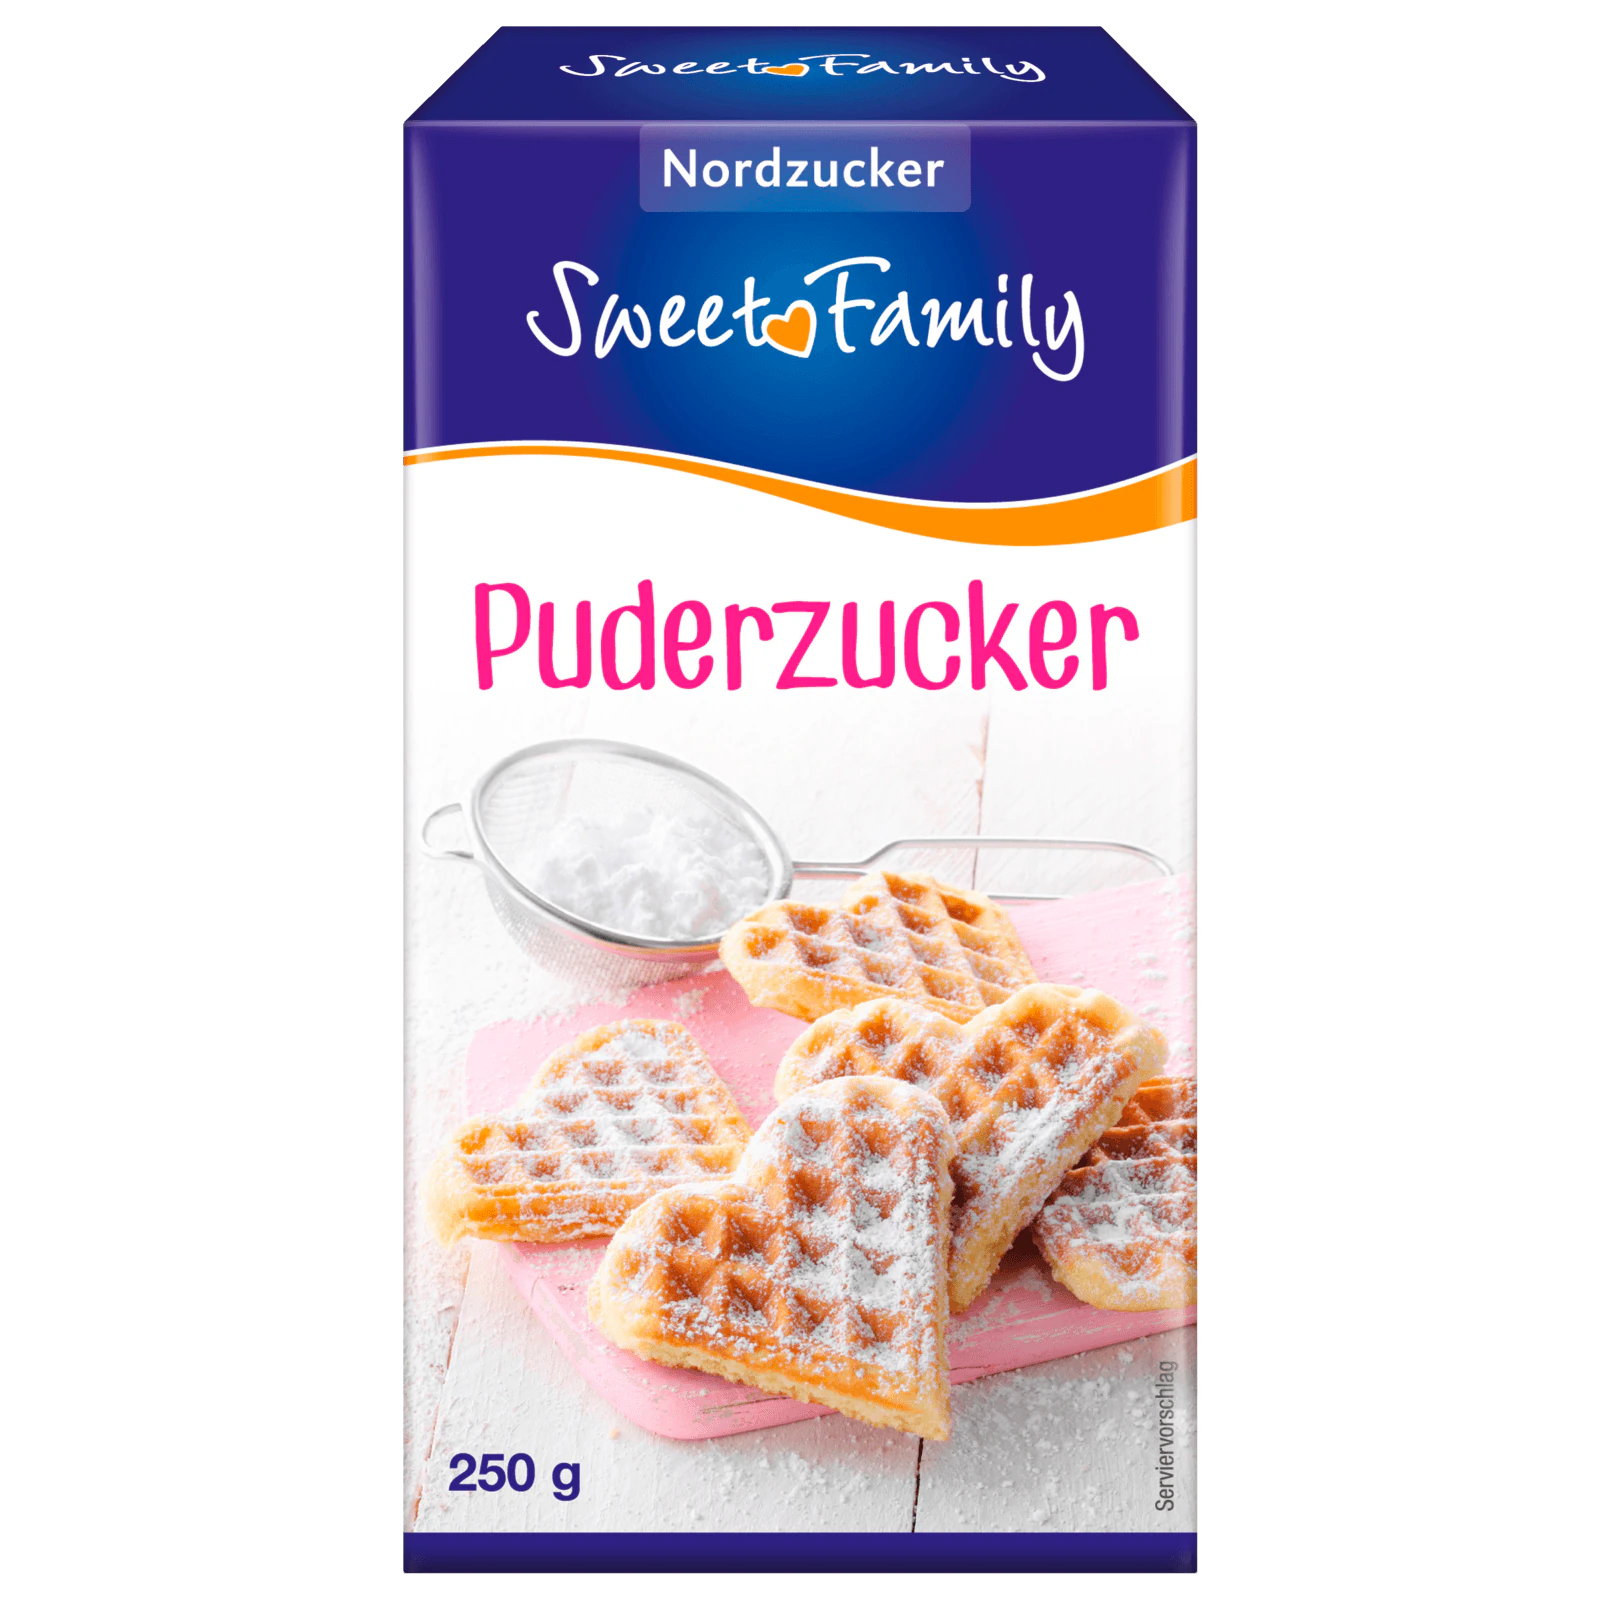 Sweet Family Puderzucker 250g  für 0.79 EUR